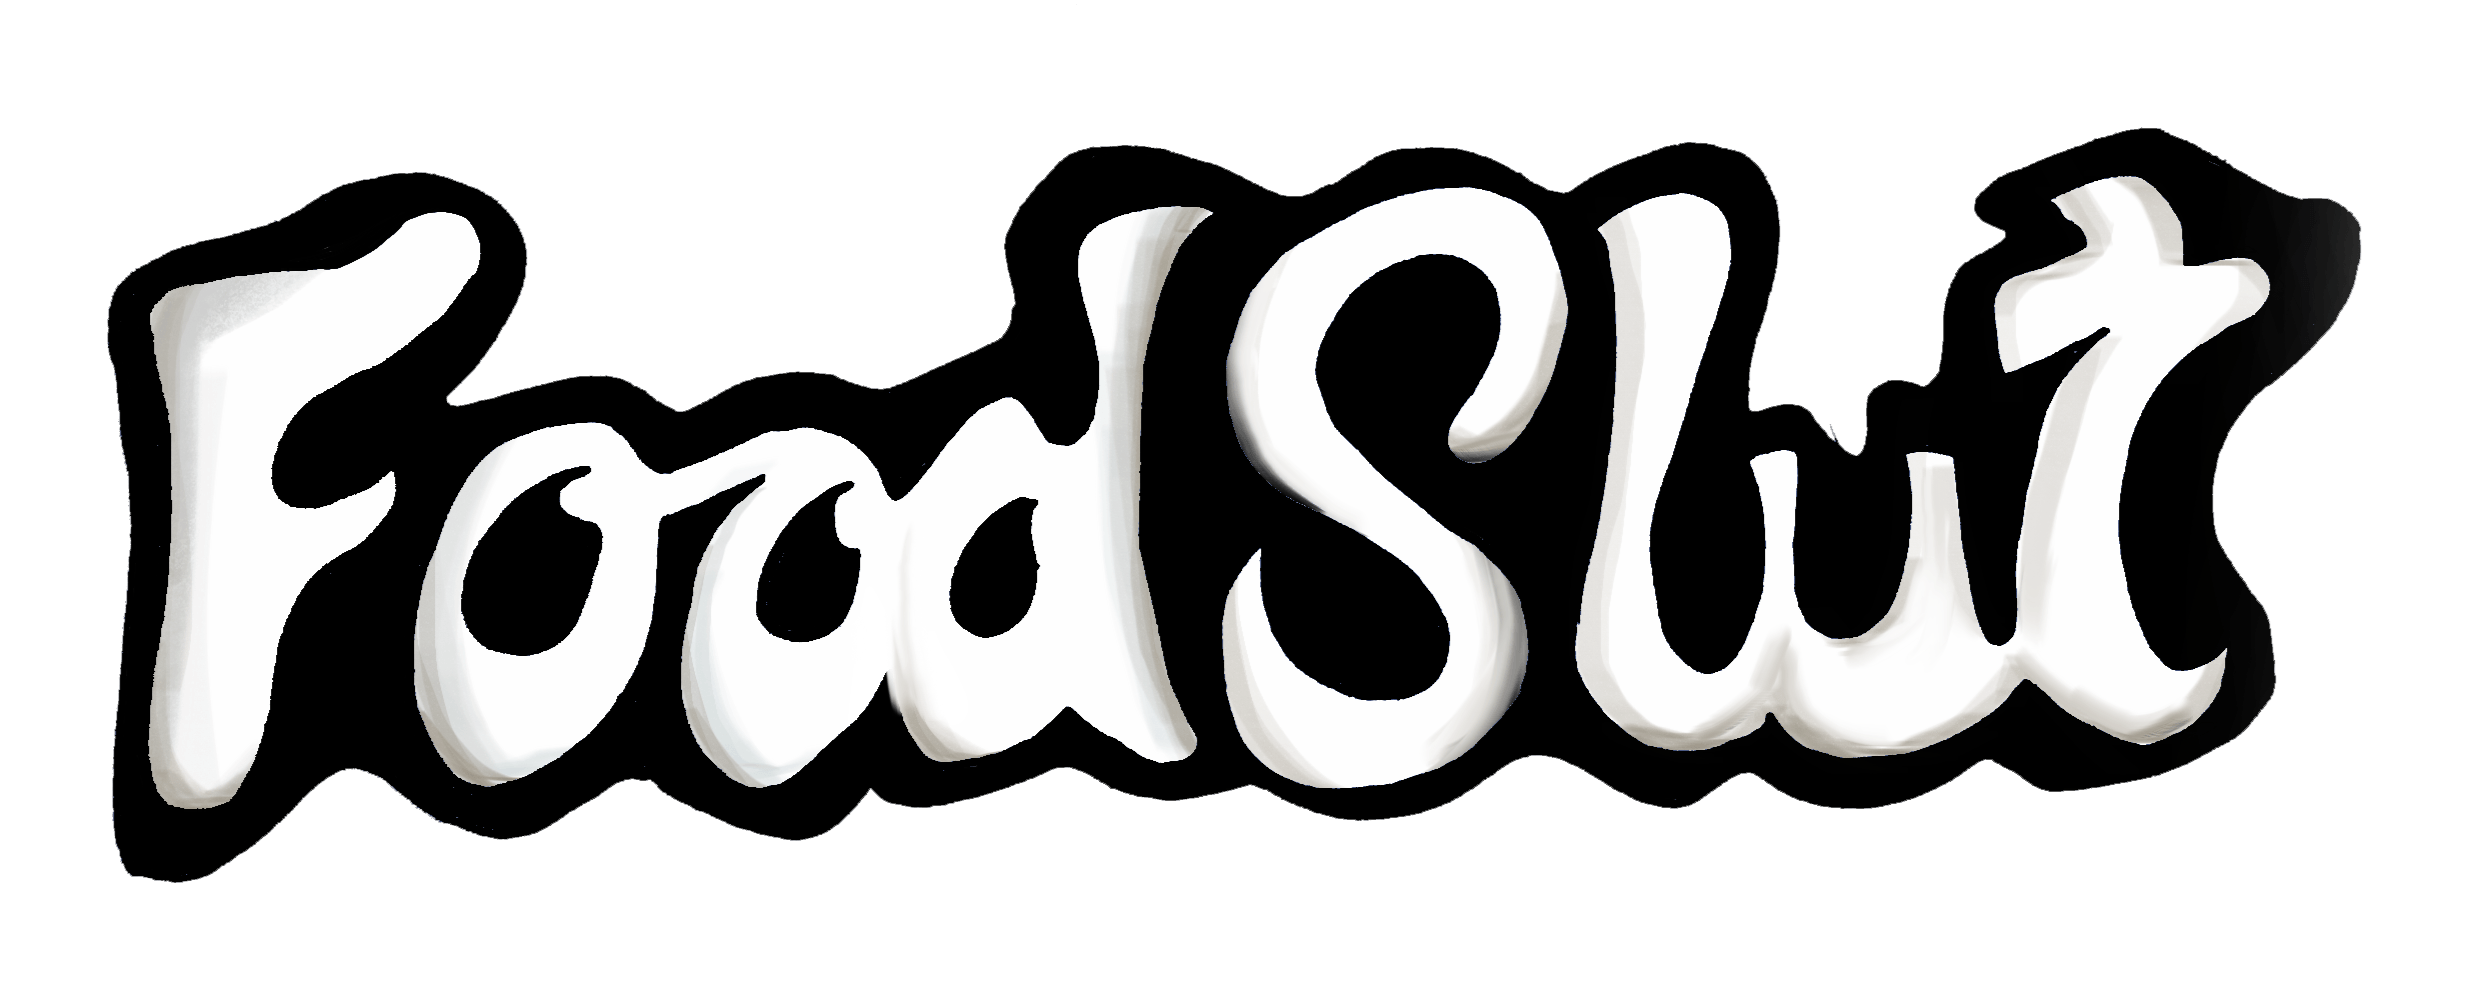 foodslut text logo